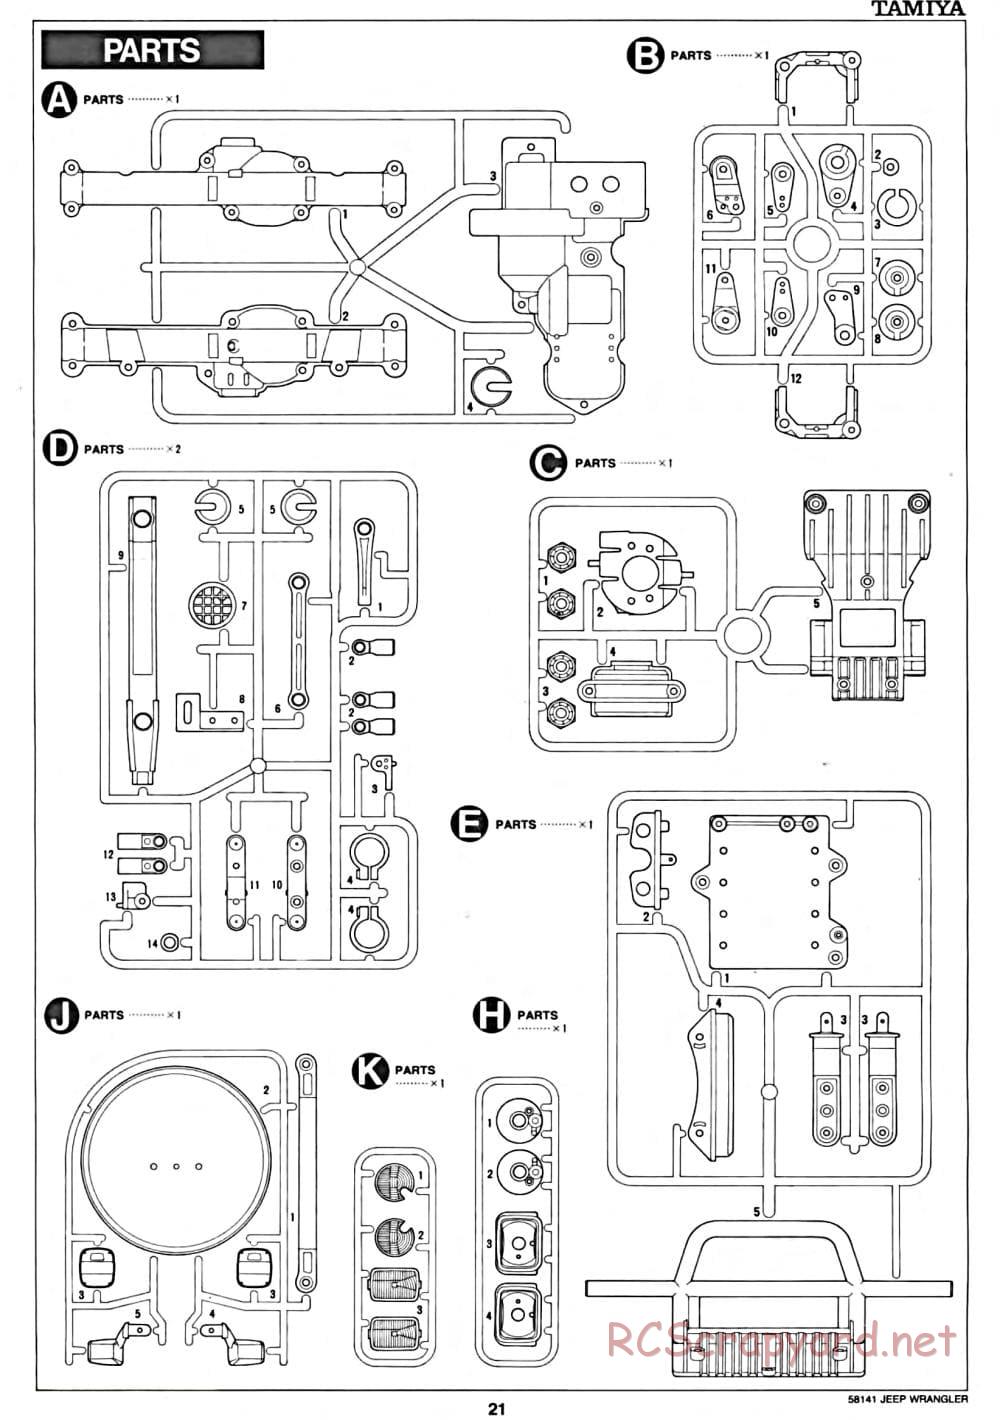 Tamiya - Jeep Wrangler - CC-01 Chassis - Manual - Page 21